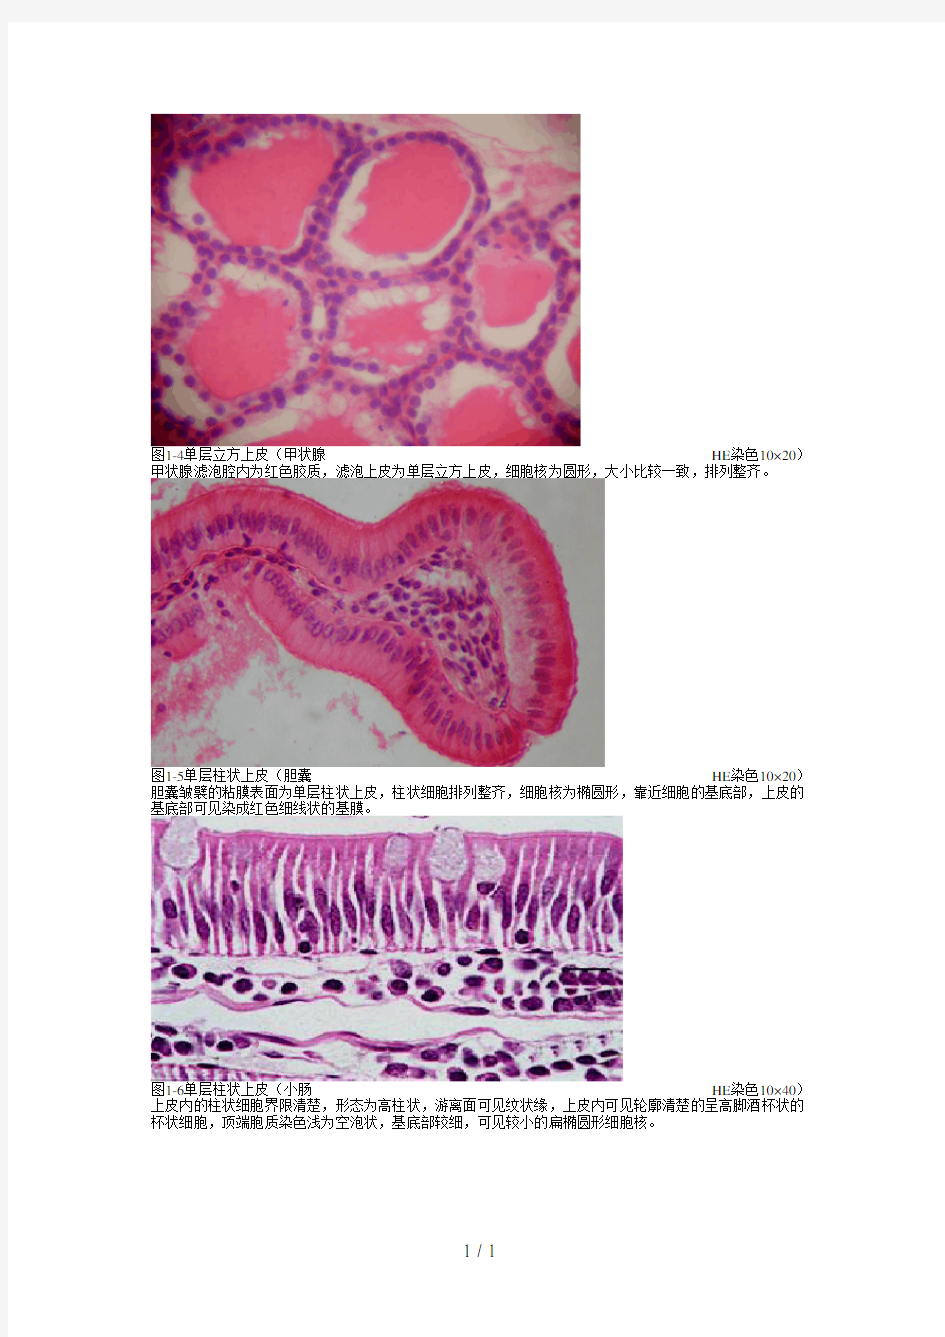 《组织学与胚胎学》图谱详细版(温州医科大学)